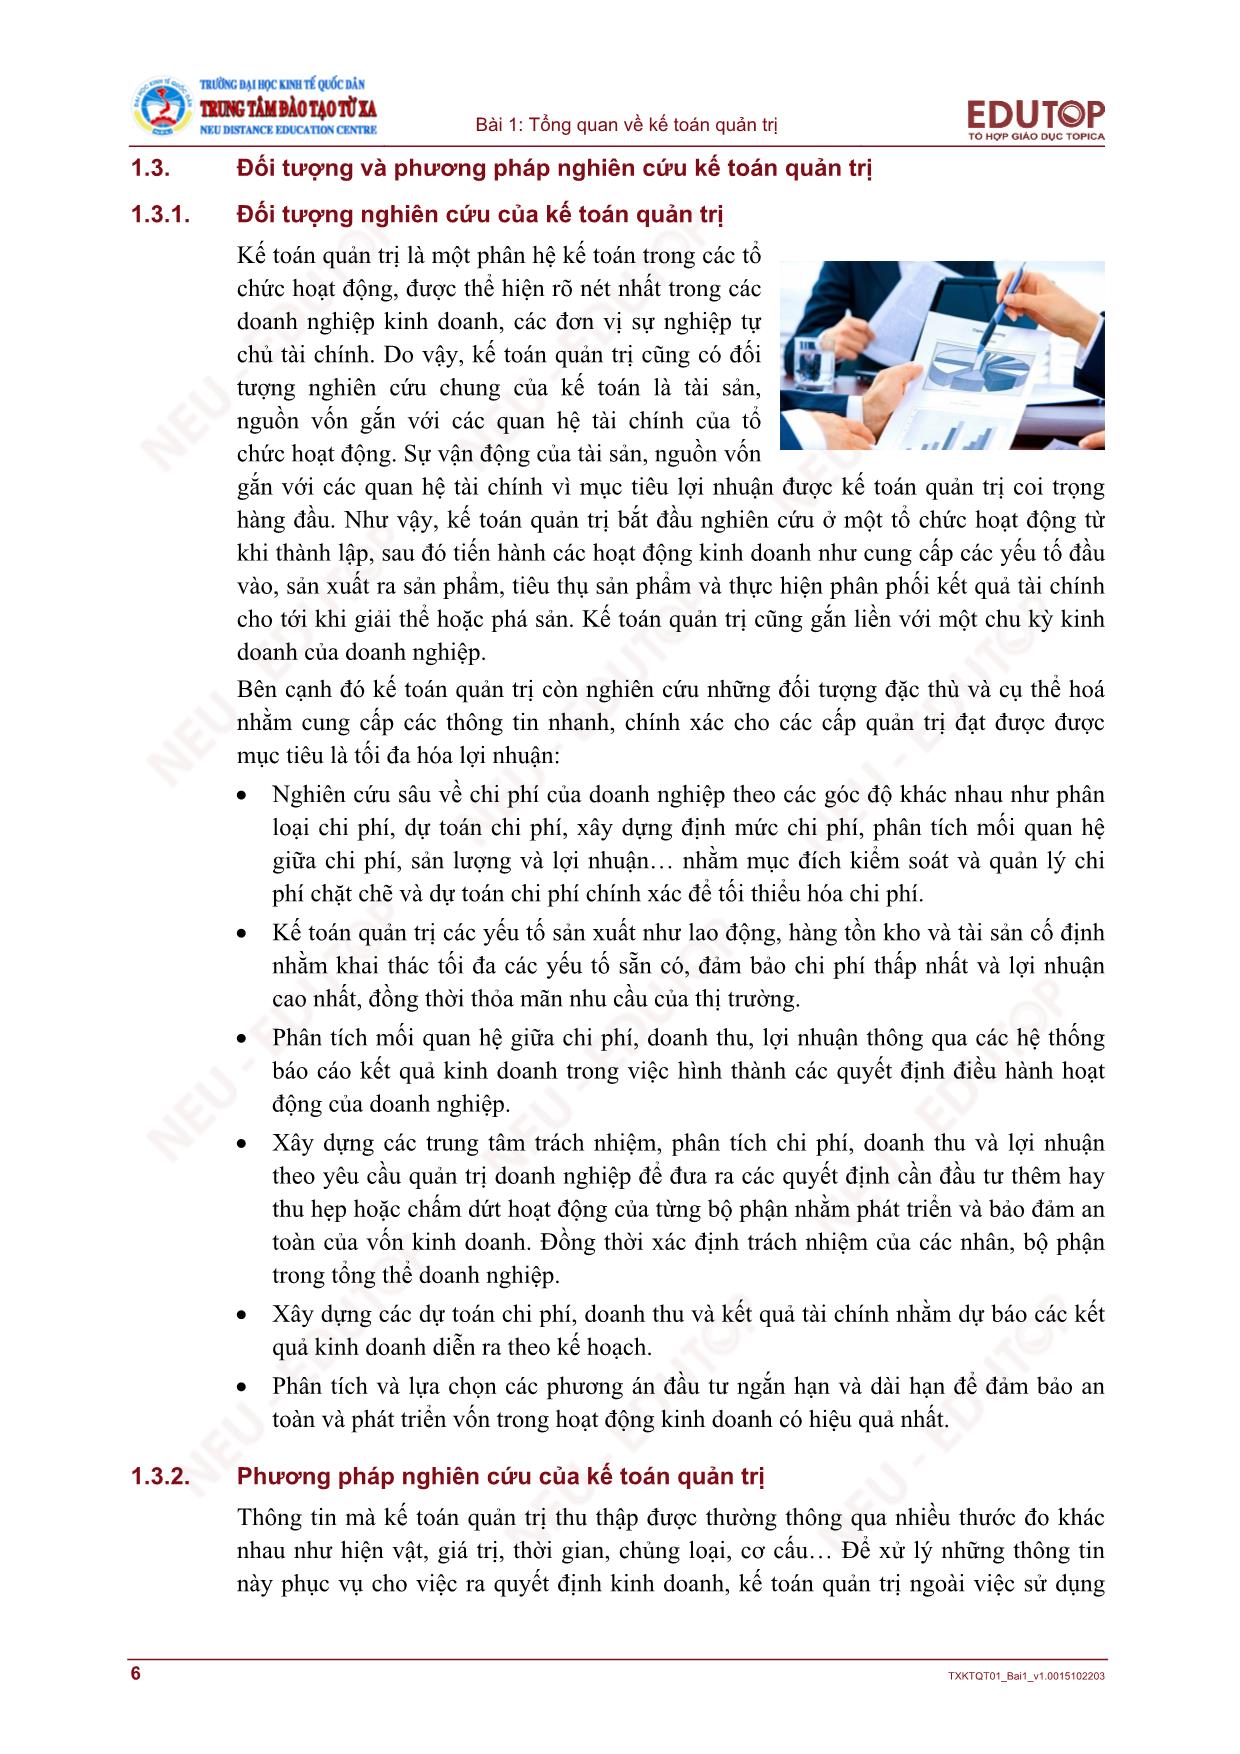 Bài giảng Kế toán quản trị - Bài 1: Tổng quan về kế toán quản trị trang 6